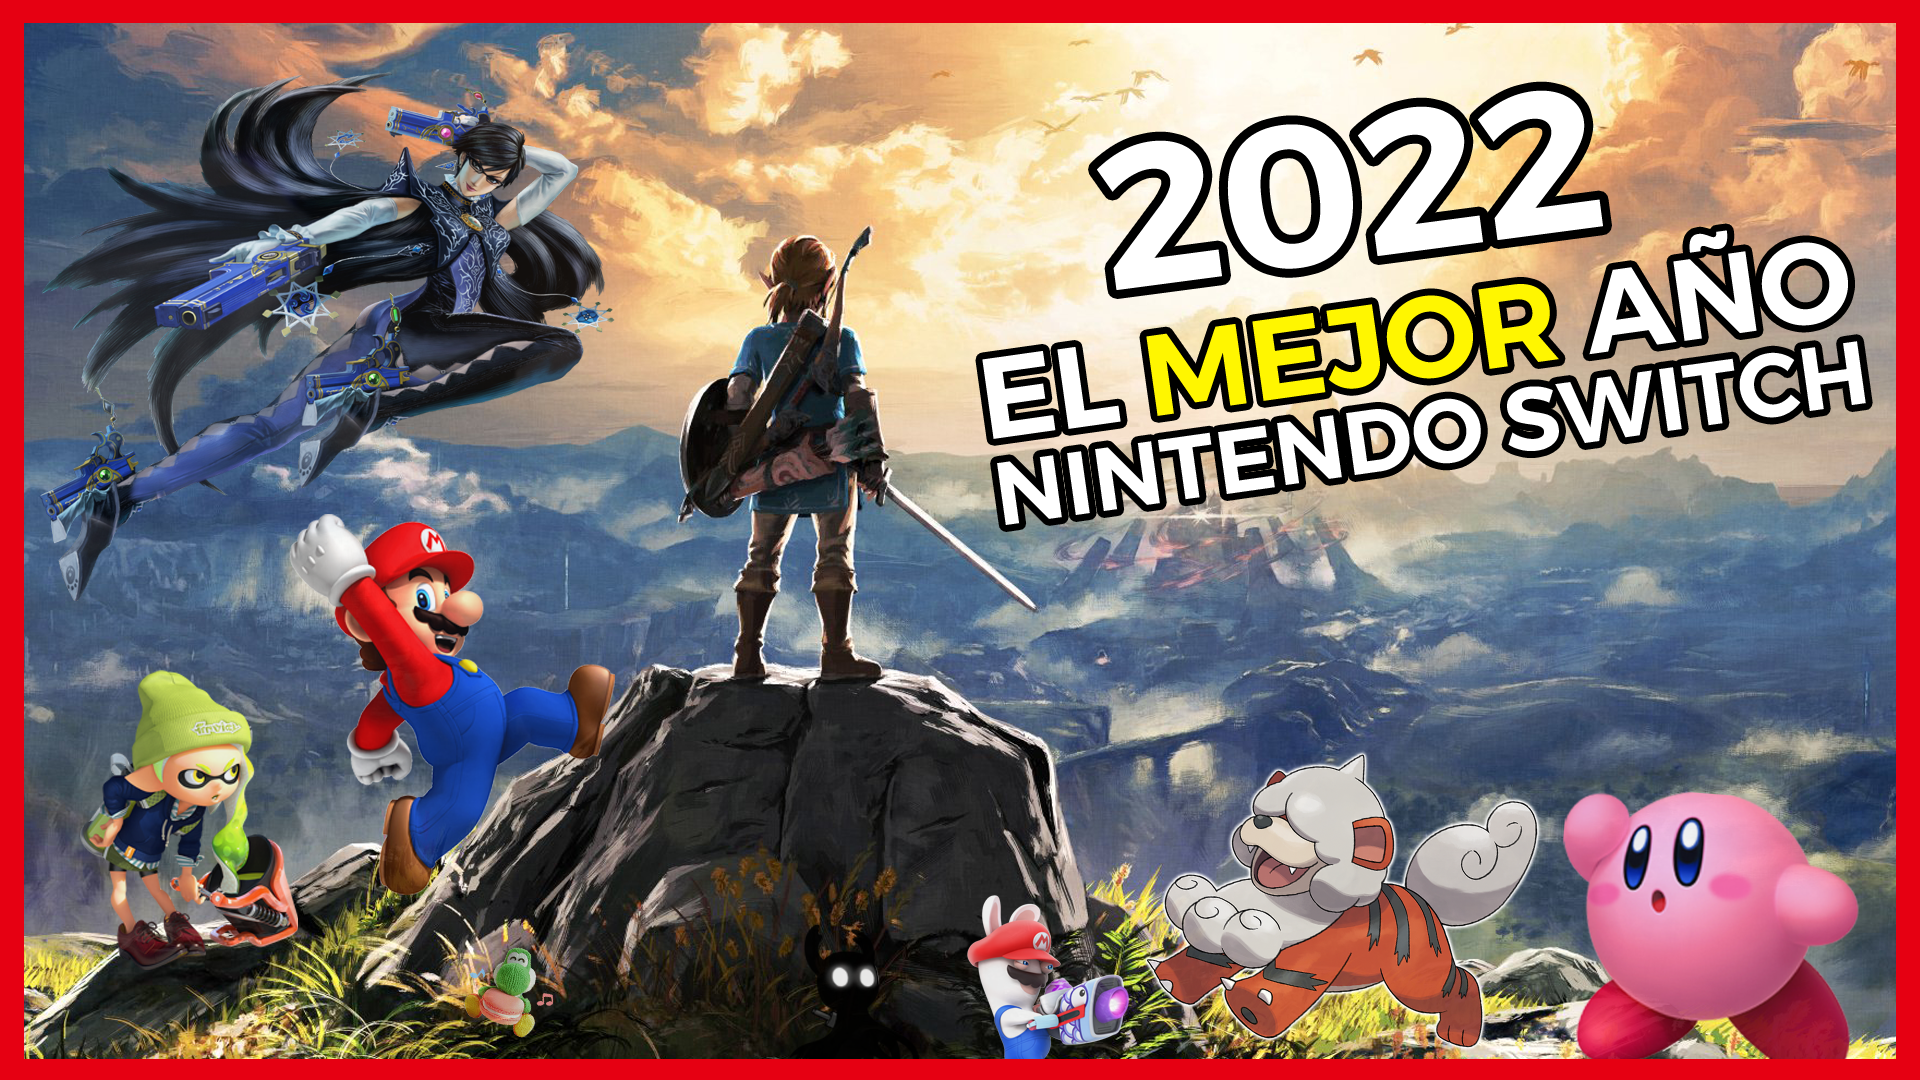 [Vídeo] Lanzamientos y novedades de Nintendo Switch en 2022: ¿el mejor año?